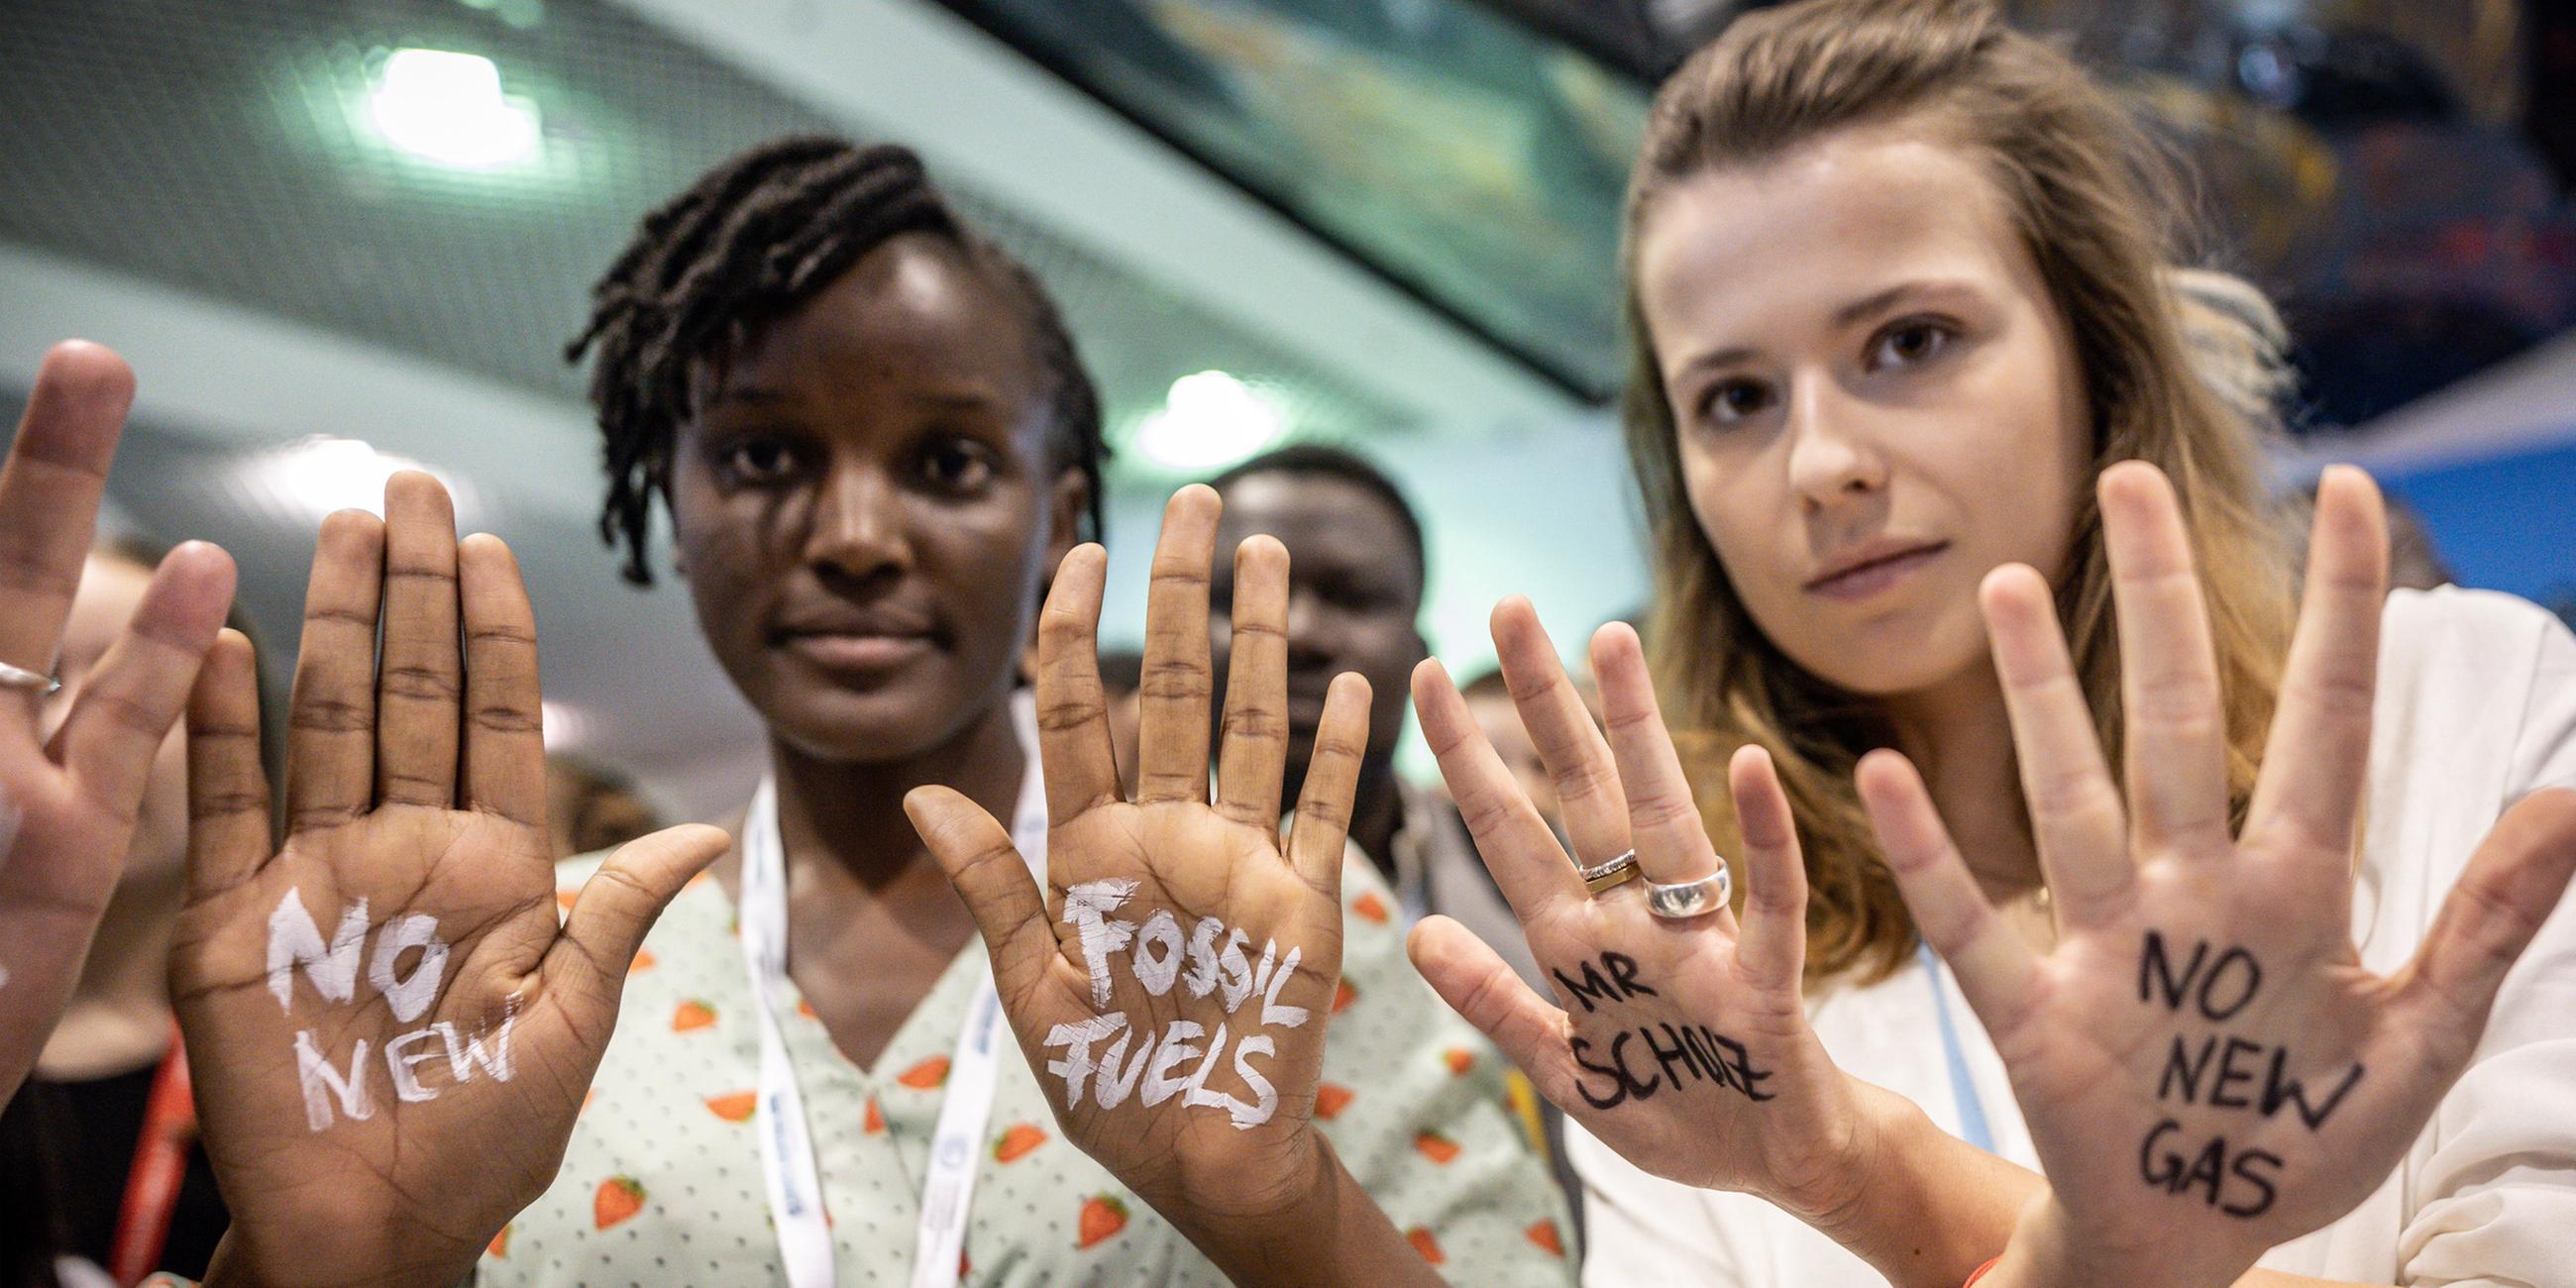 Luisa Neubauer (r), Klimaaktivistin der Fridays for Future Bewegung, hat sich bei der UN-Weltklimakonferenz neben Vanessa Nakate aus Uganda die Worte "No New Gas - Mr Scholz" auf die Handflächen gemalt. 